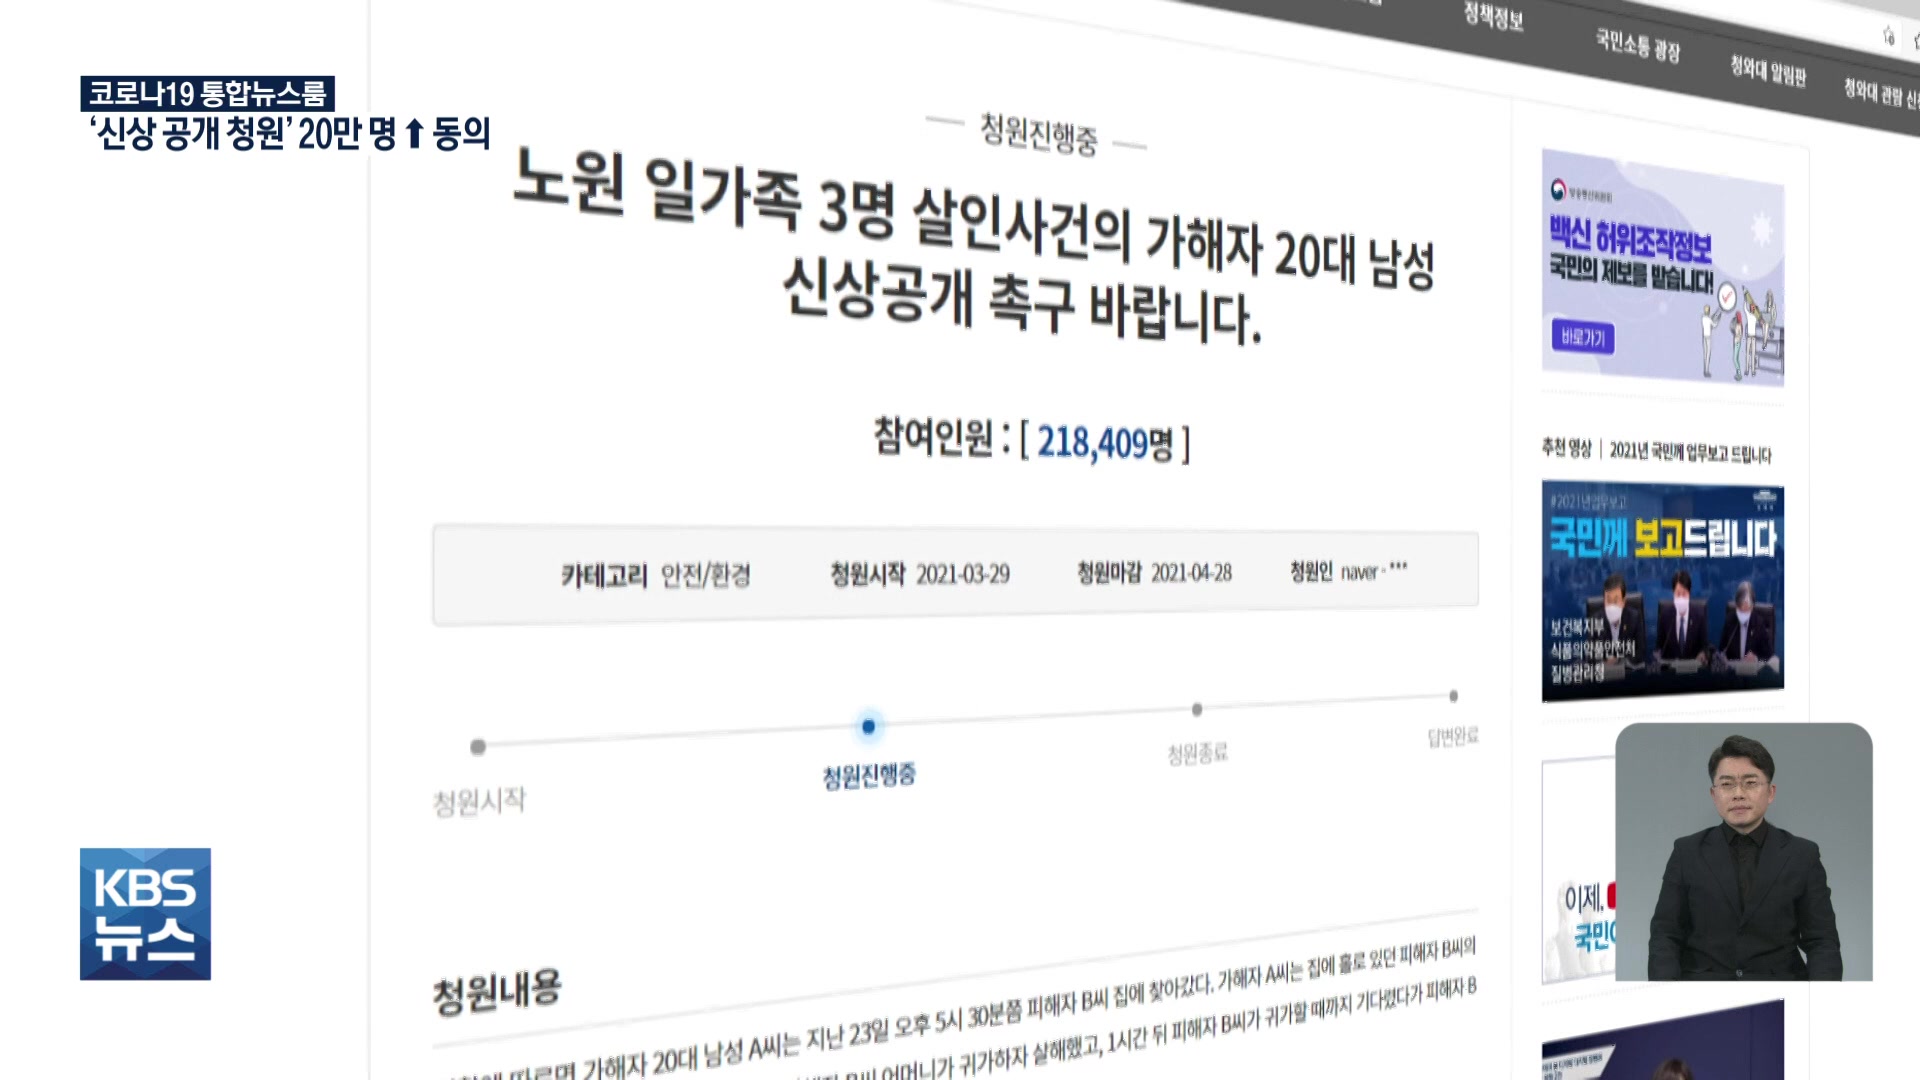 ‘세 모녀 피살사건’ 청원 20만 명 넘어…신상 공개 이뤄지나?